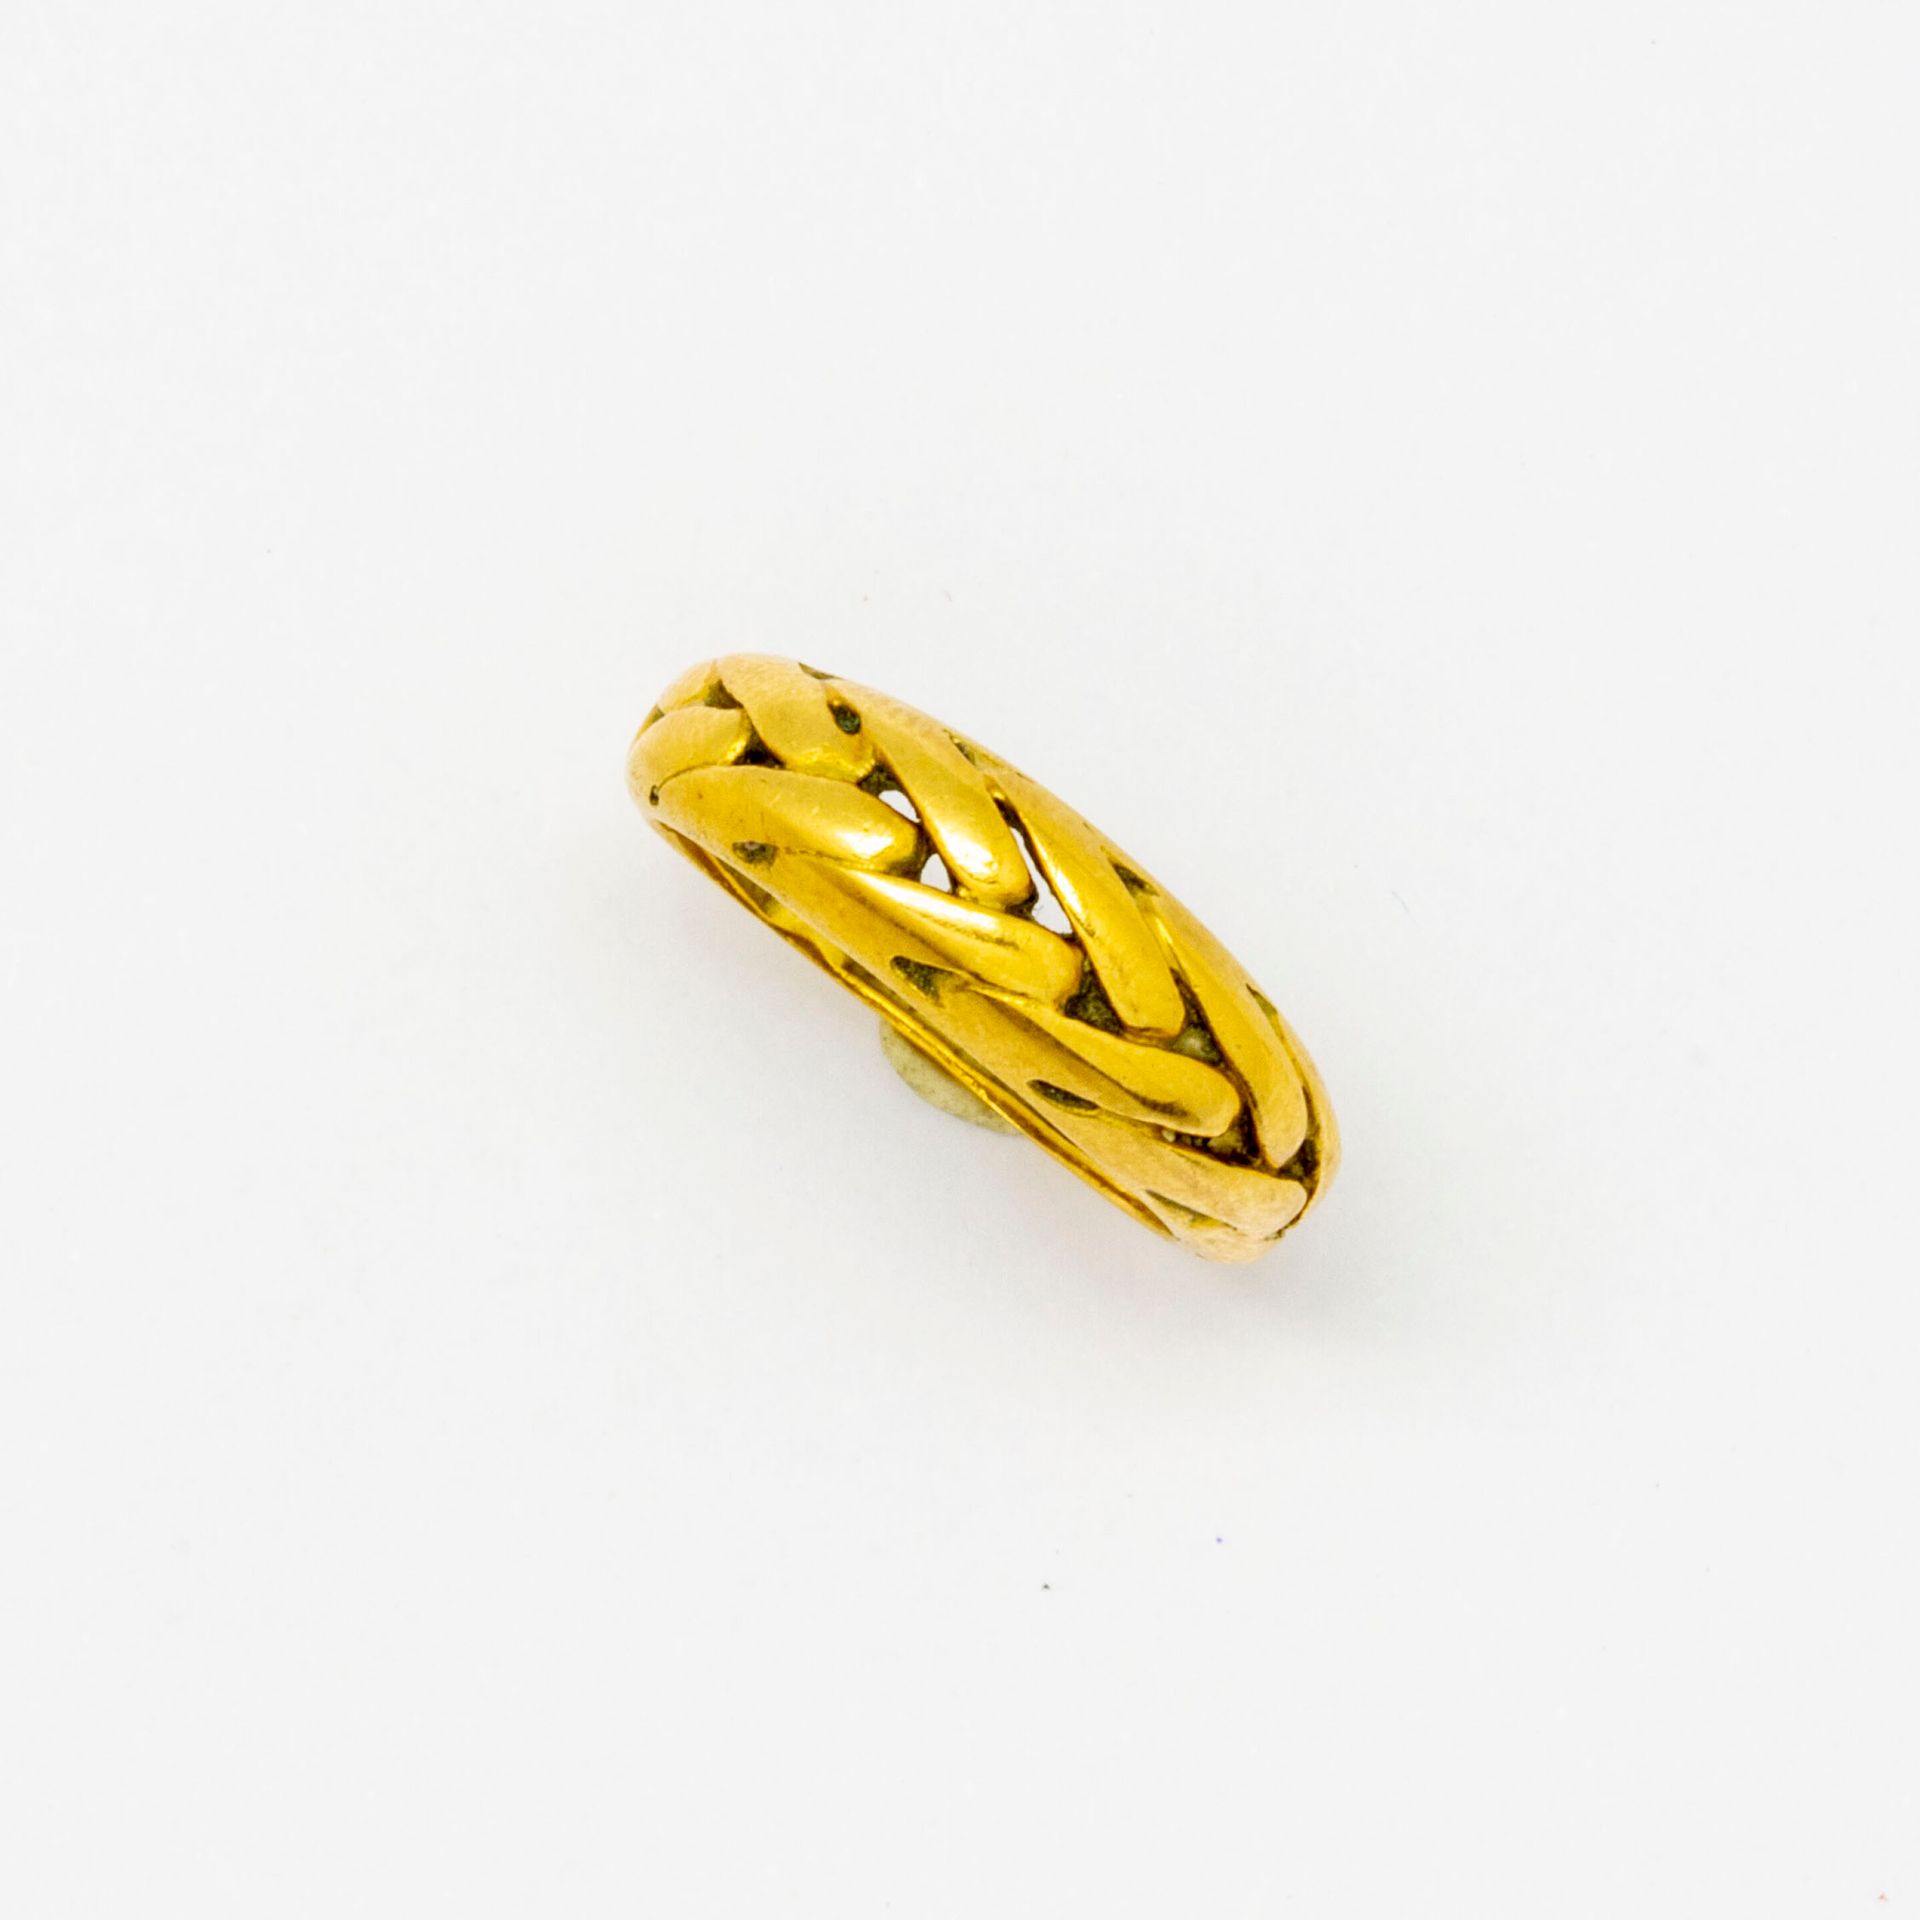 Null 玉米穗图案的黄金戒指

重量 : 3,5 g